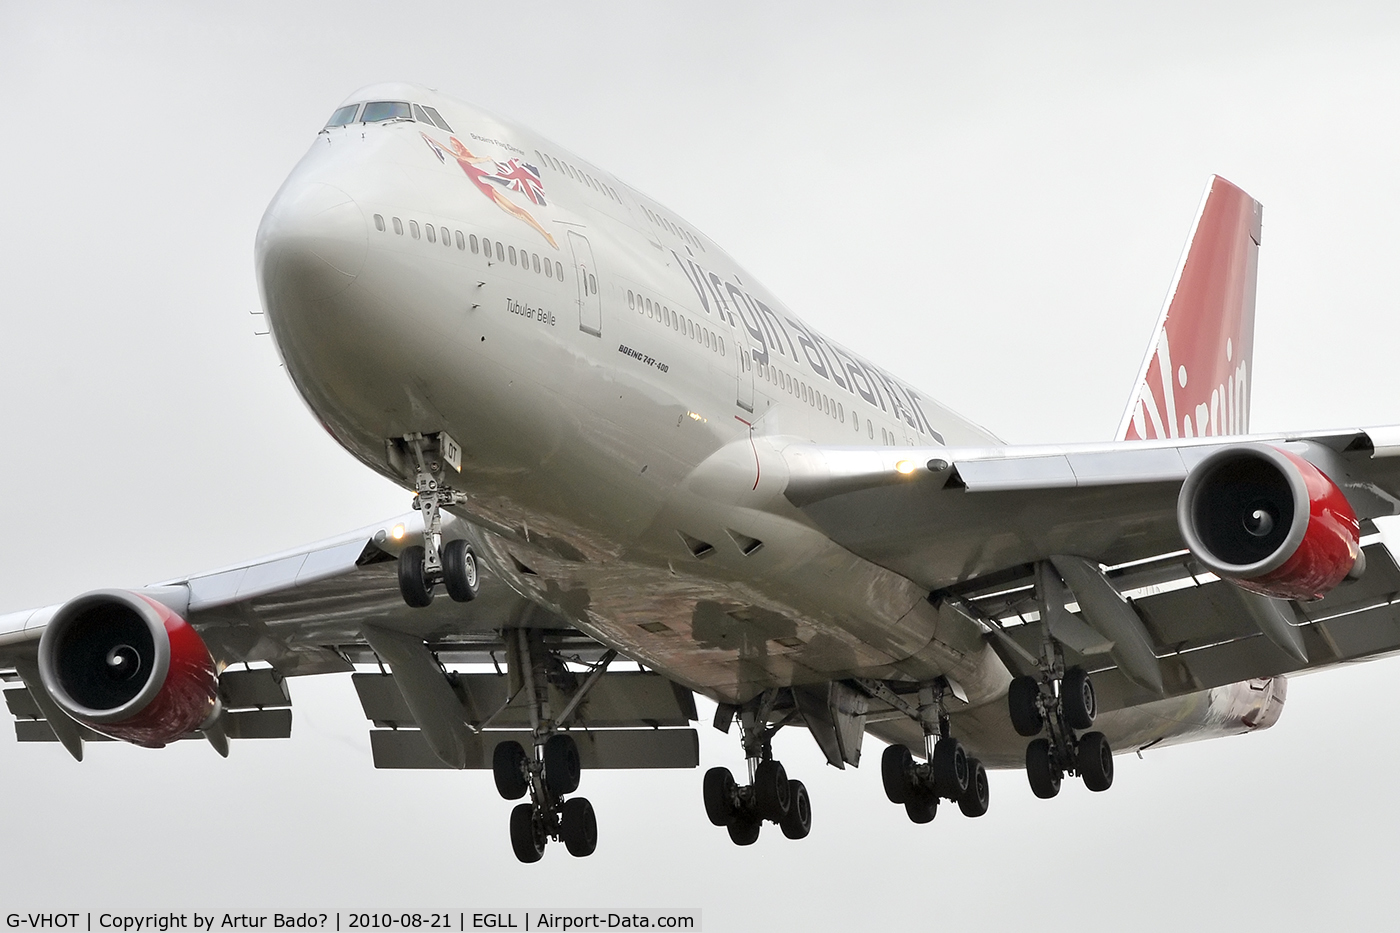 G-VHOT, 1994 Boeing 747-4Q8 C/N 26326, Virgin Atlantic